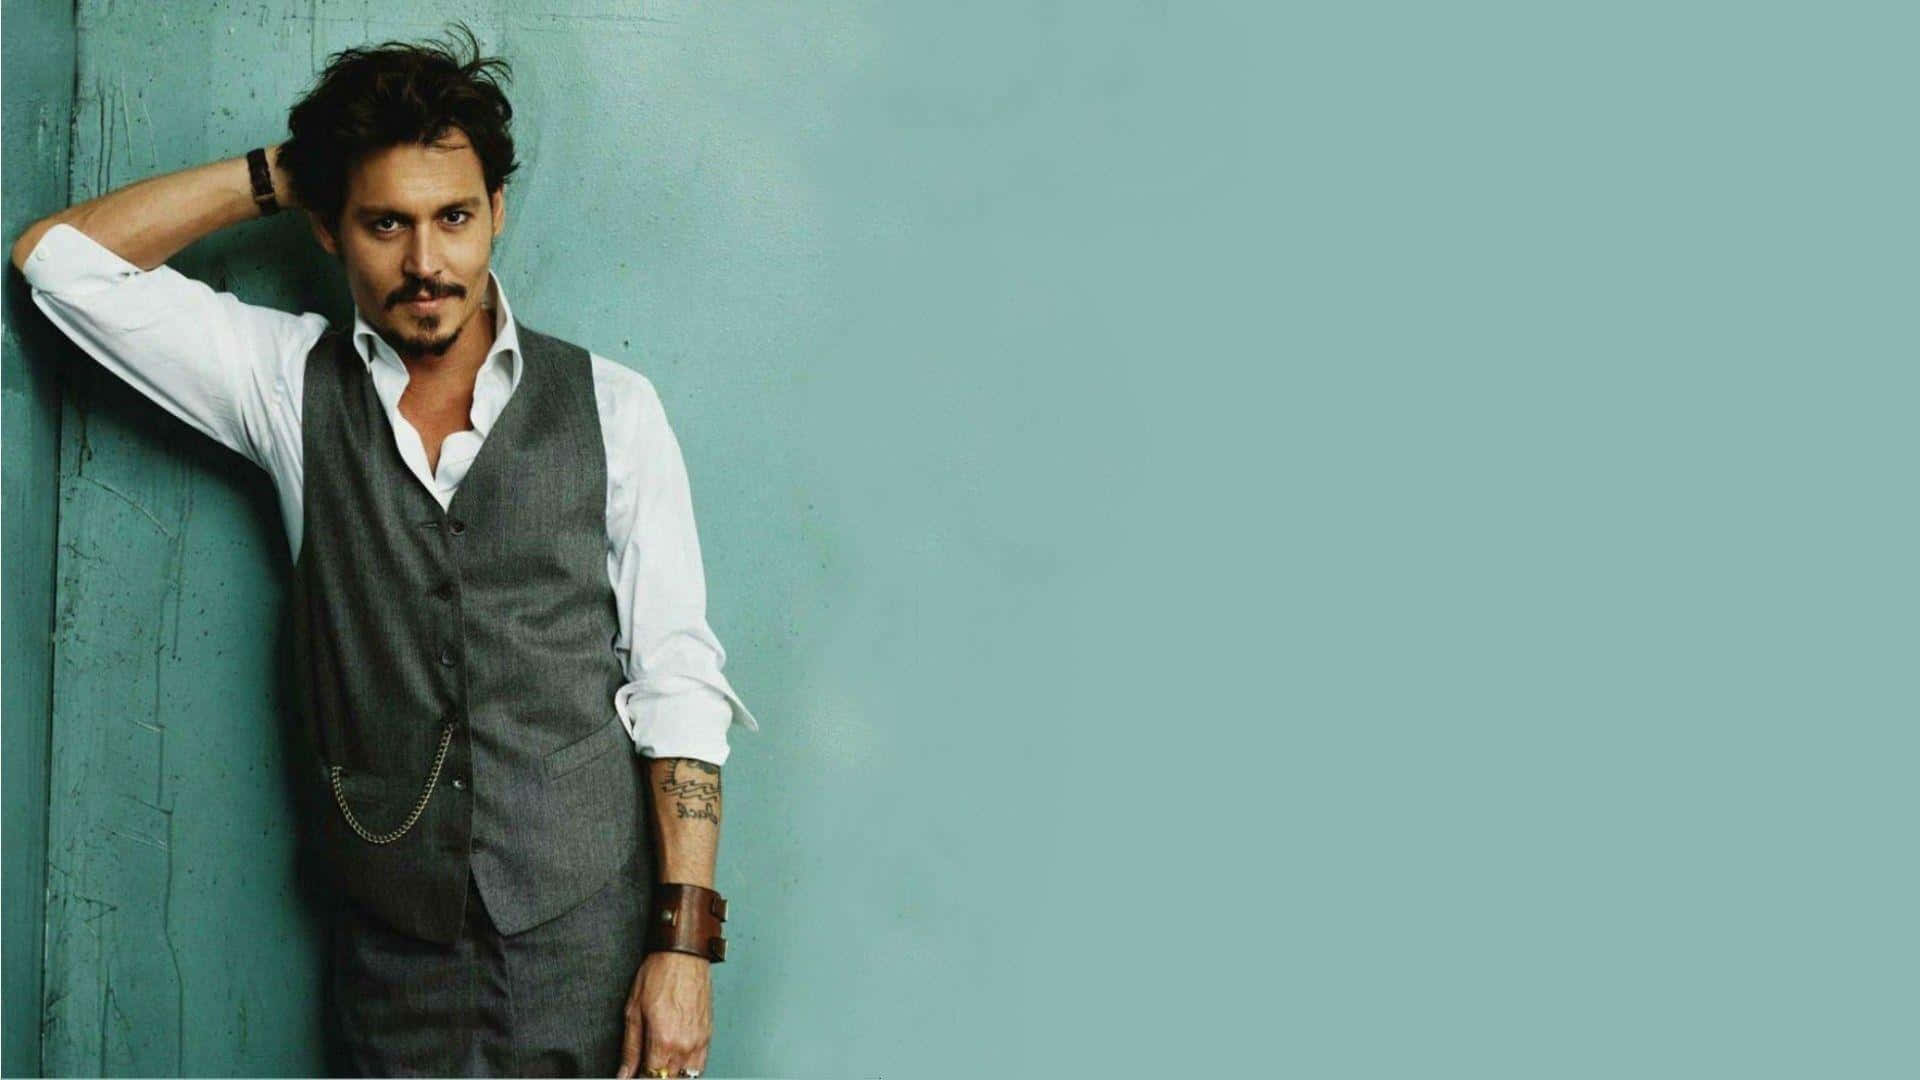 Award-winning actor Johnny Depp